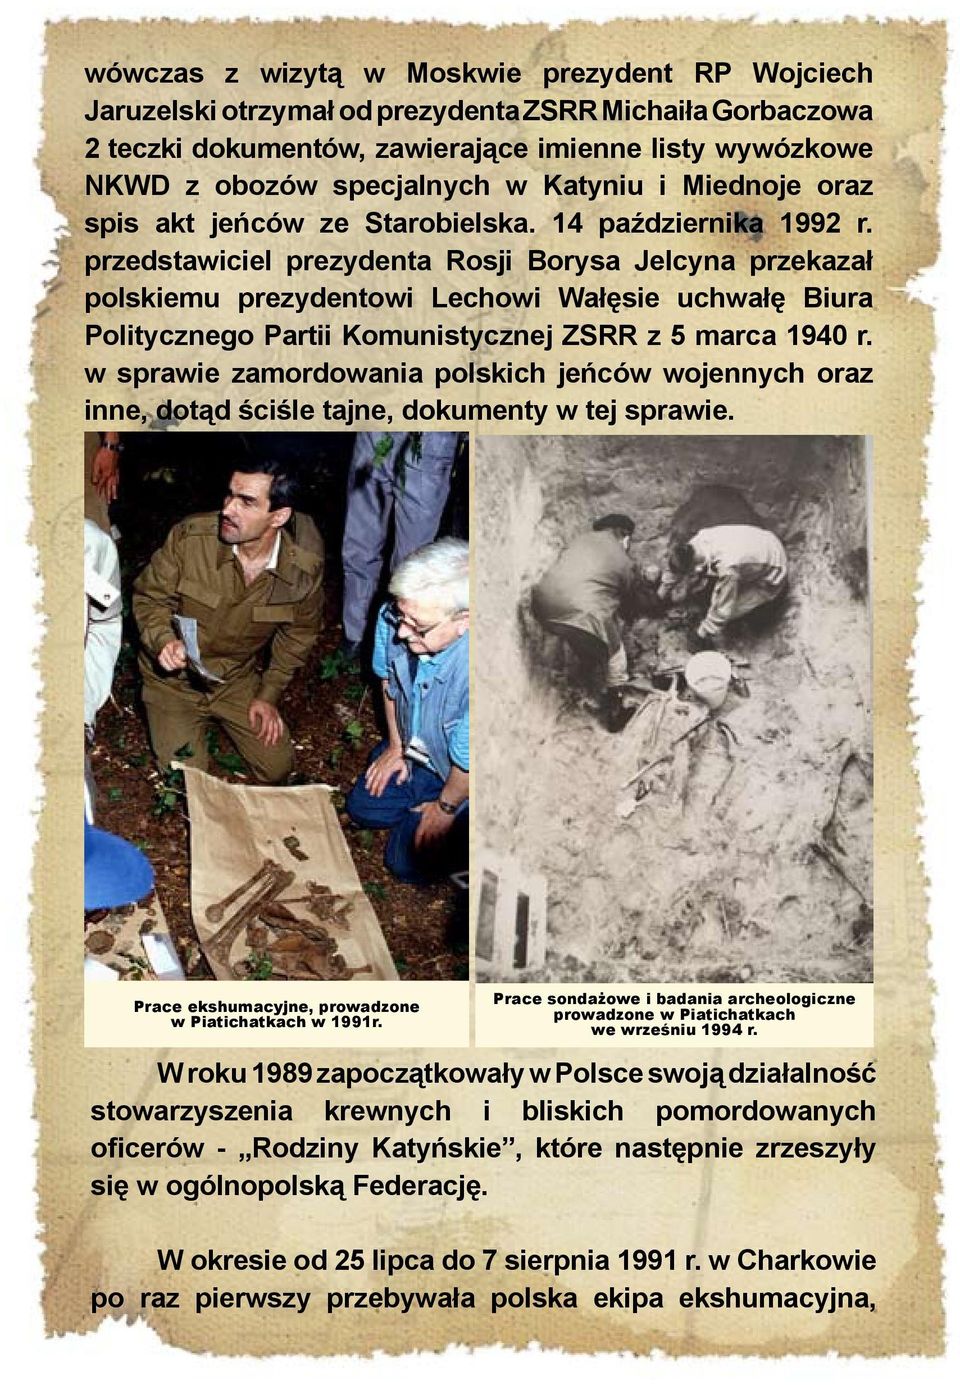 przedstawiciel prezydenta Rosji Borysa Jelcyna przekazał polskiemu prezydentowi Lechowi Wałęsie uchwałę Biura Politycznego Partii Komunistycznej ZSRR z 5 marca 1940 r.